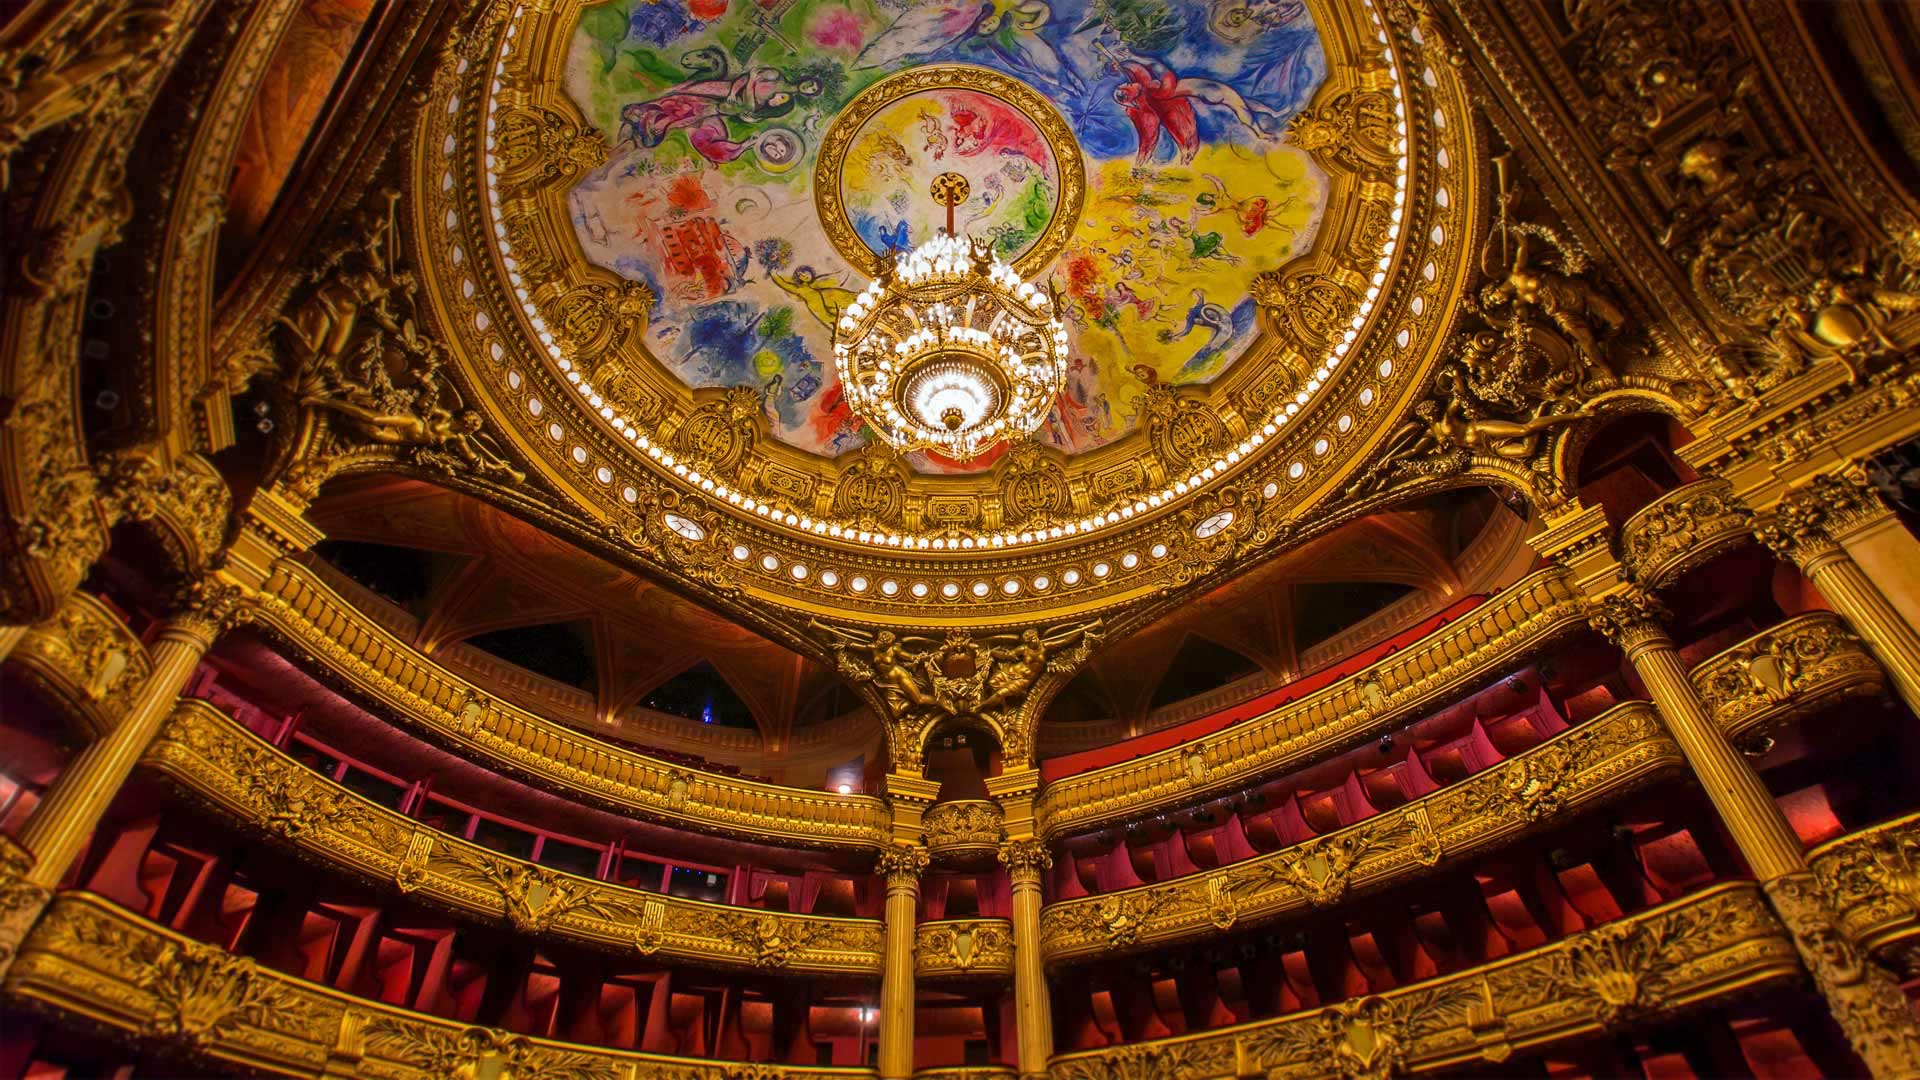 Art abounds at the Palais Garnier